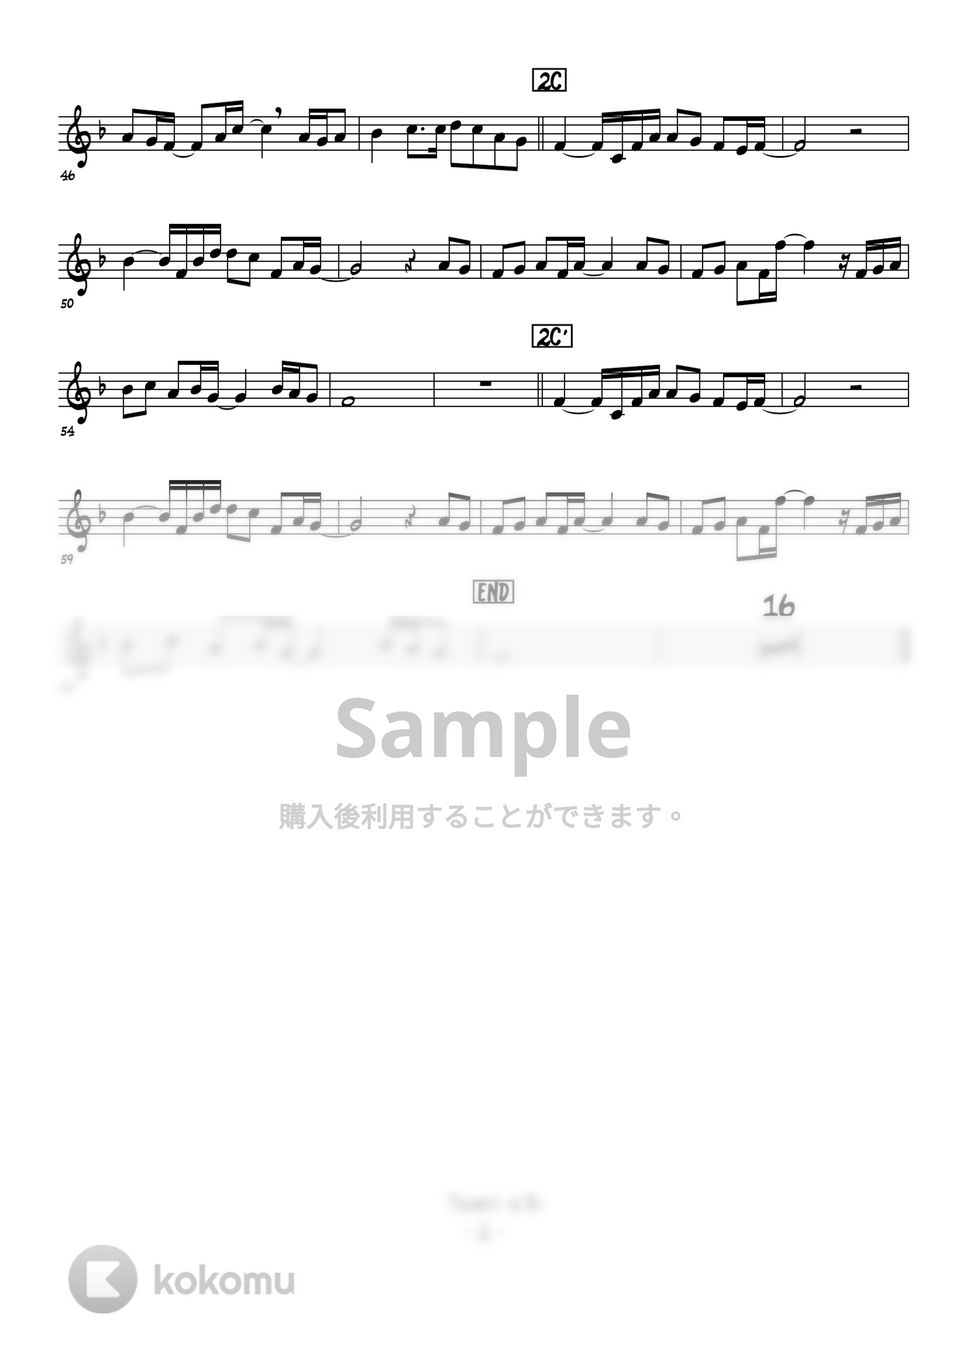 中島みゆき - 糸 (トランペットメロディー譜) by 高田将利